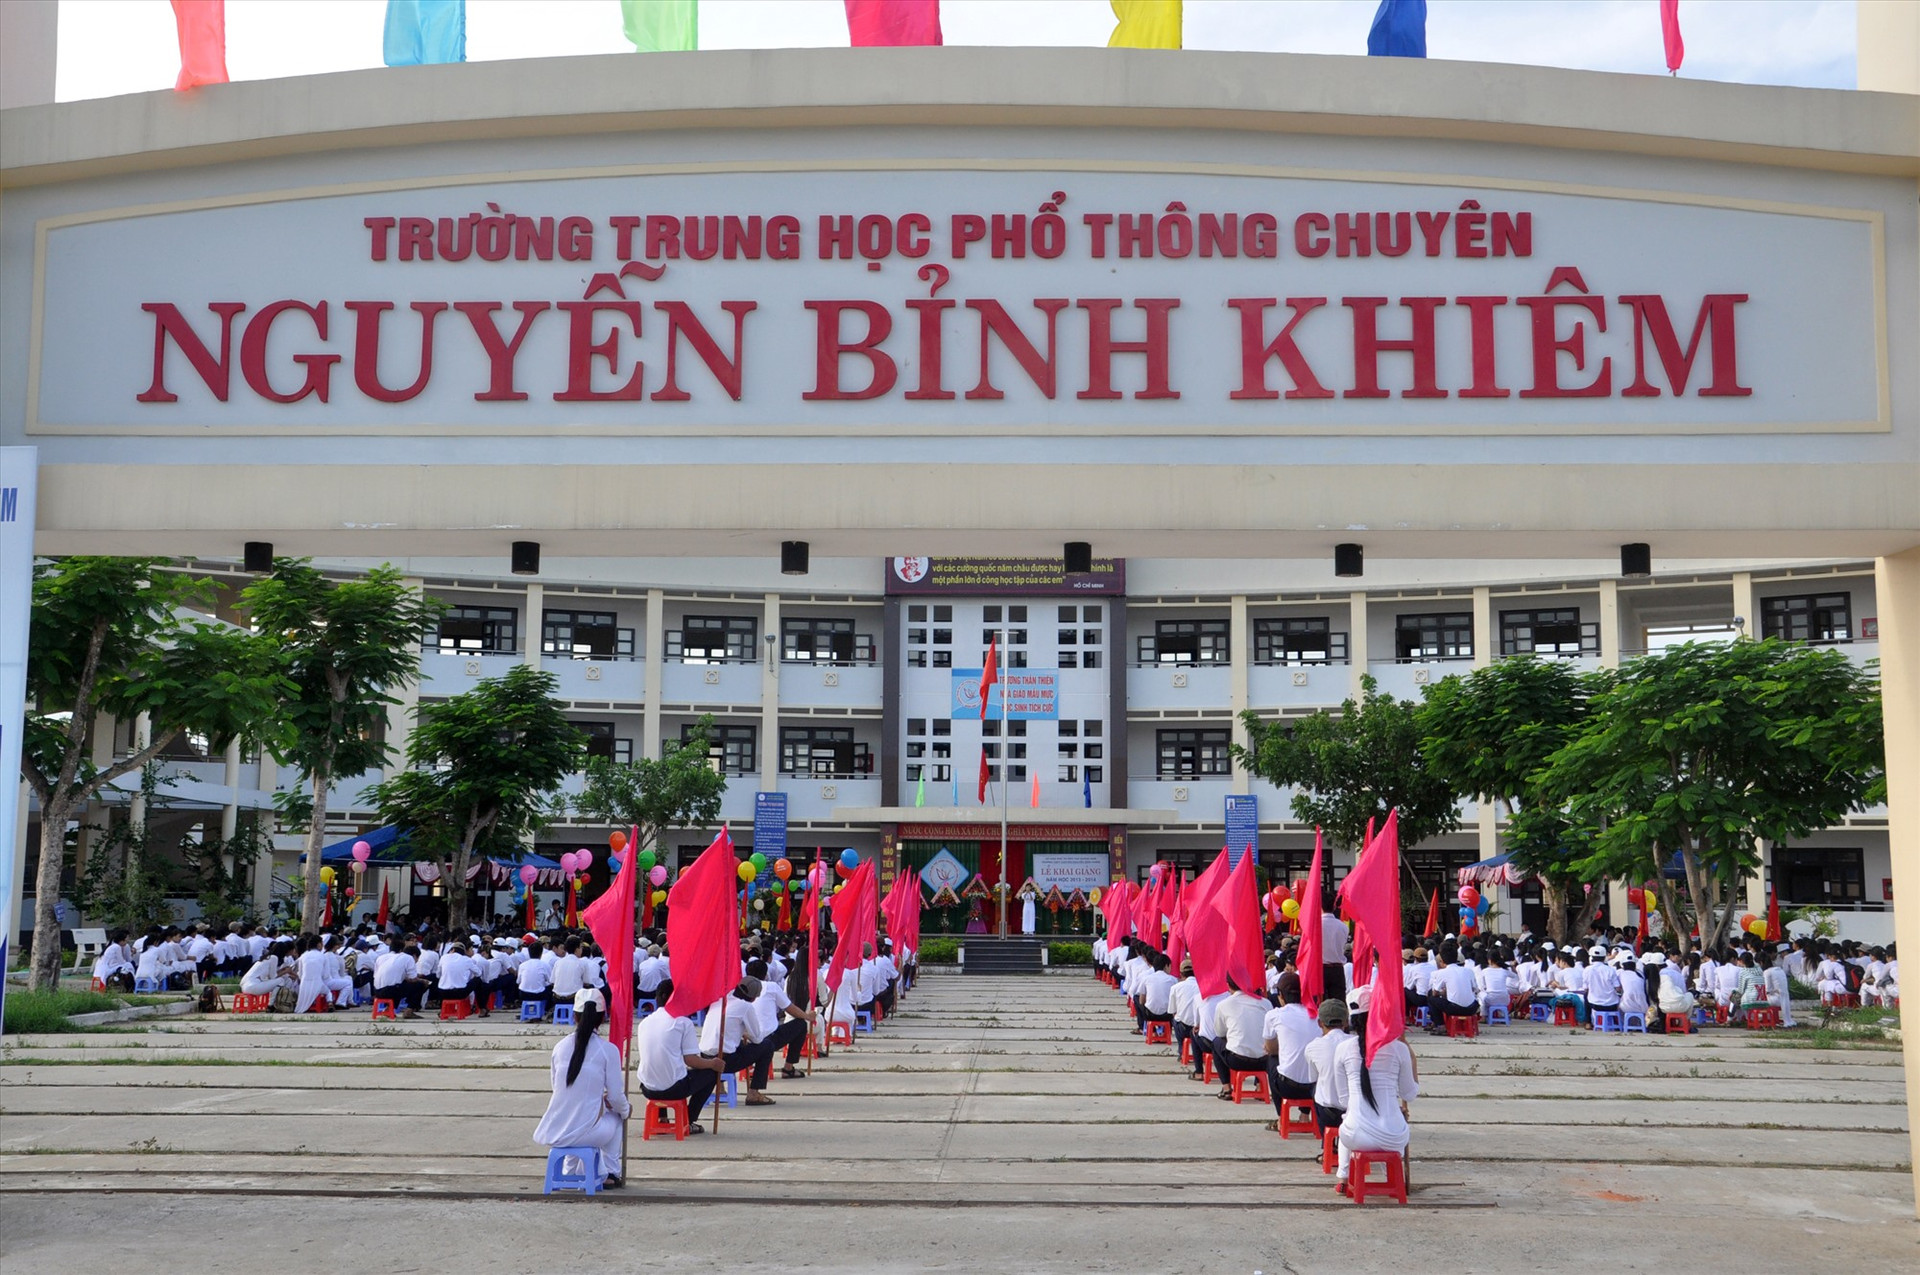 Trường THPT chuyên Nguyễn Bỉnh Khiêm sau 20 năm thành lập đã góp phần đào tạo, bồi dưỡng nguồn nhân lực chất lượng cao cho tỉnh và cả nước. Ảnh: X.P